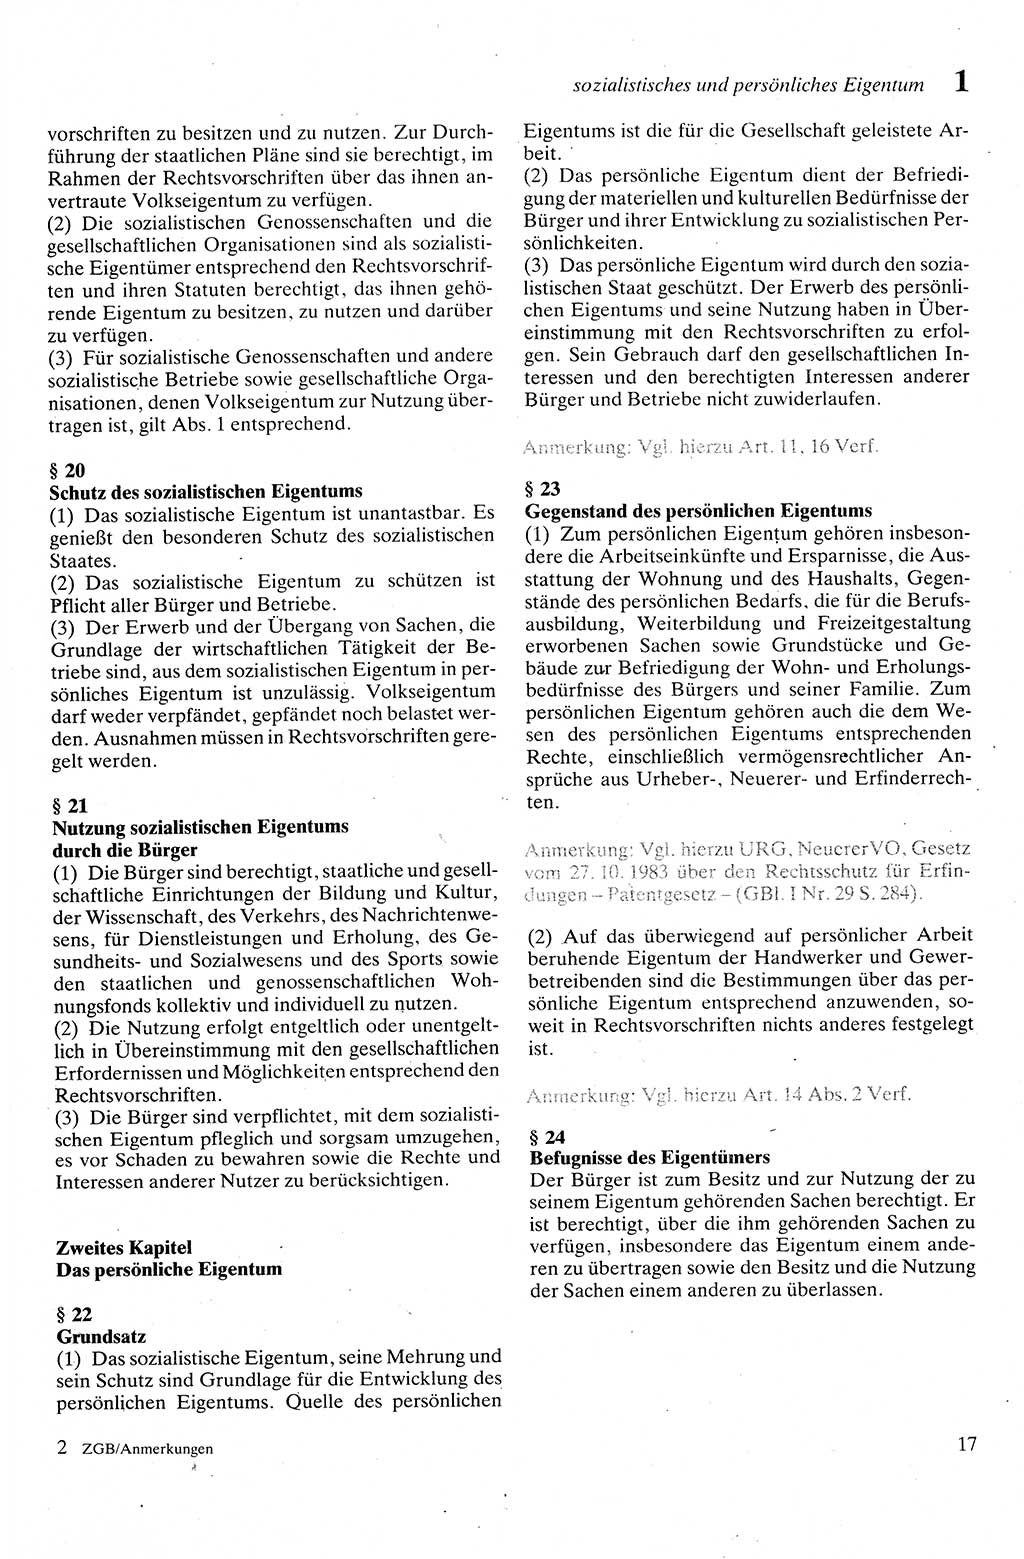 Zivilgesetzbuch (ZVG) sowie angrenzende Gesetze und Bestimmungen [Deutsche Demokratische Republik (DDR)] 1975, Seite 17 (ZGB Ges. Best. DDR 1975, S. 17)